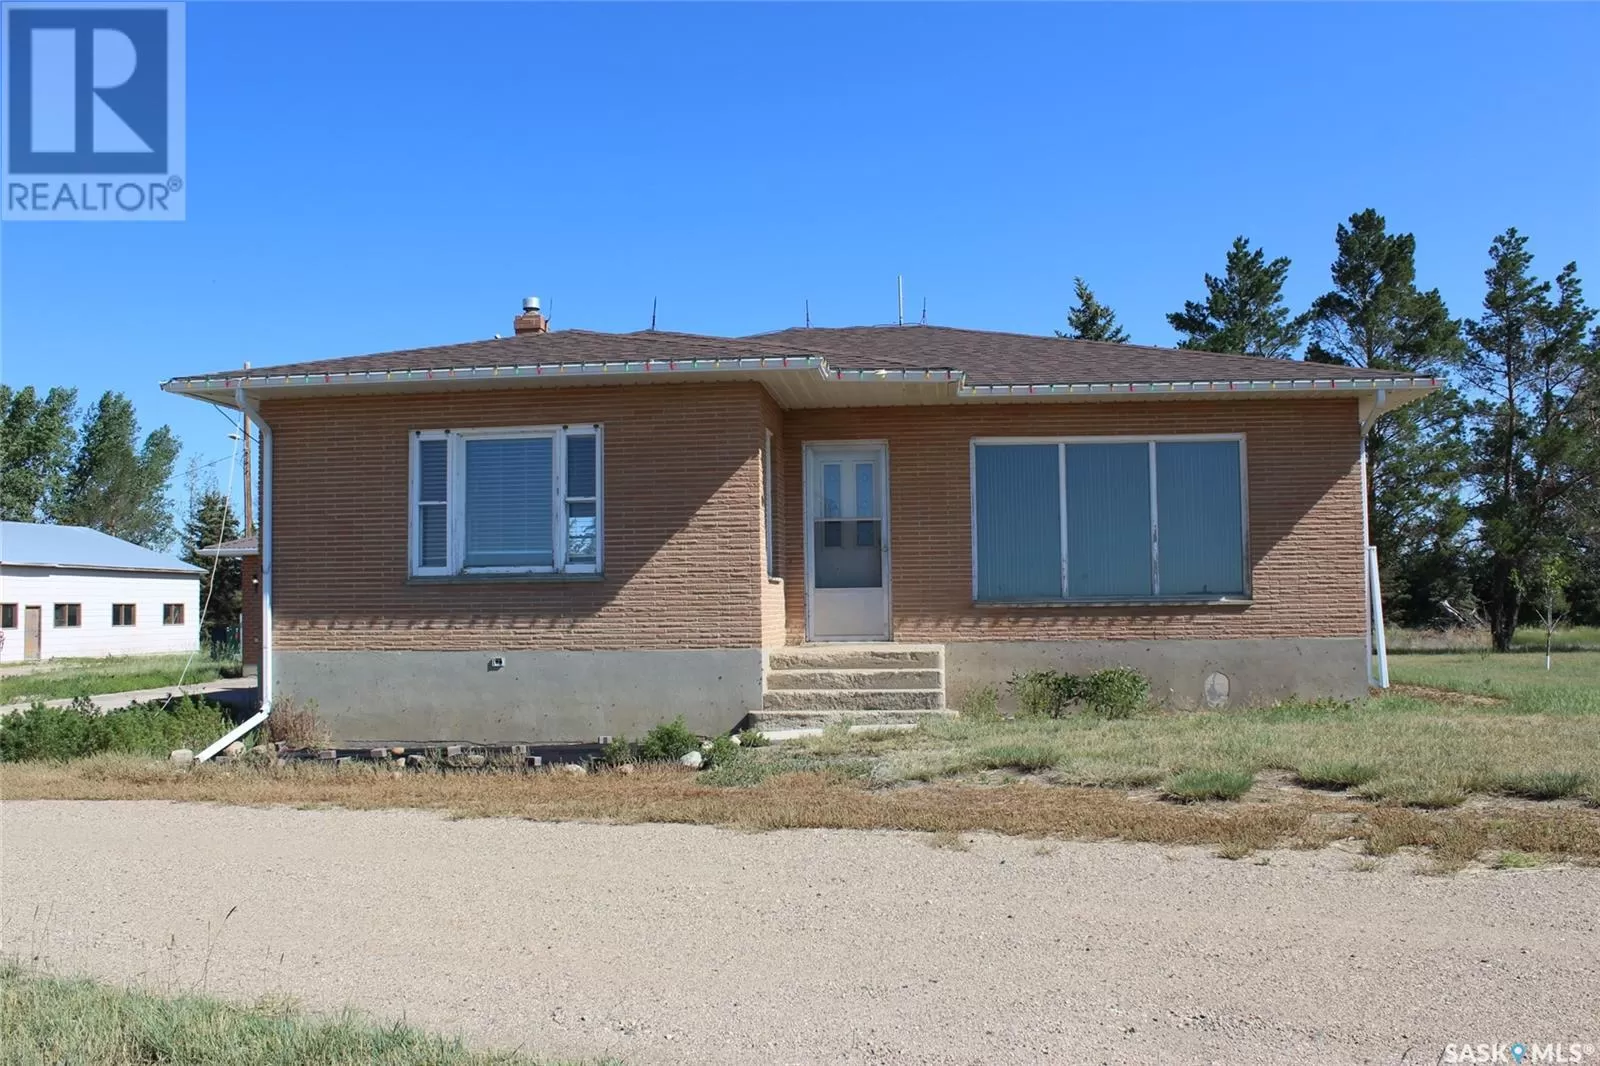 House for rent: Se 13-11-05 W3, Gravelbourg Rm No. 104, Saskatchewan S0H 1X0